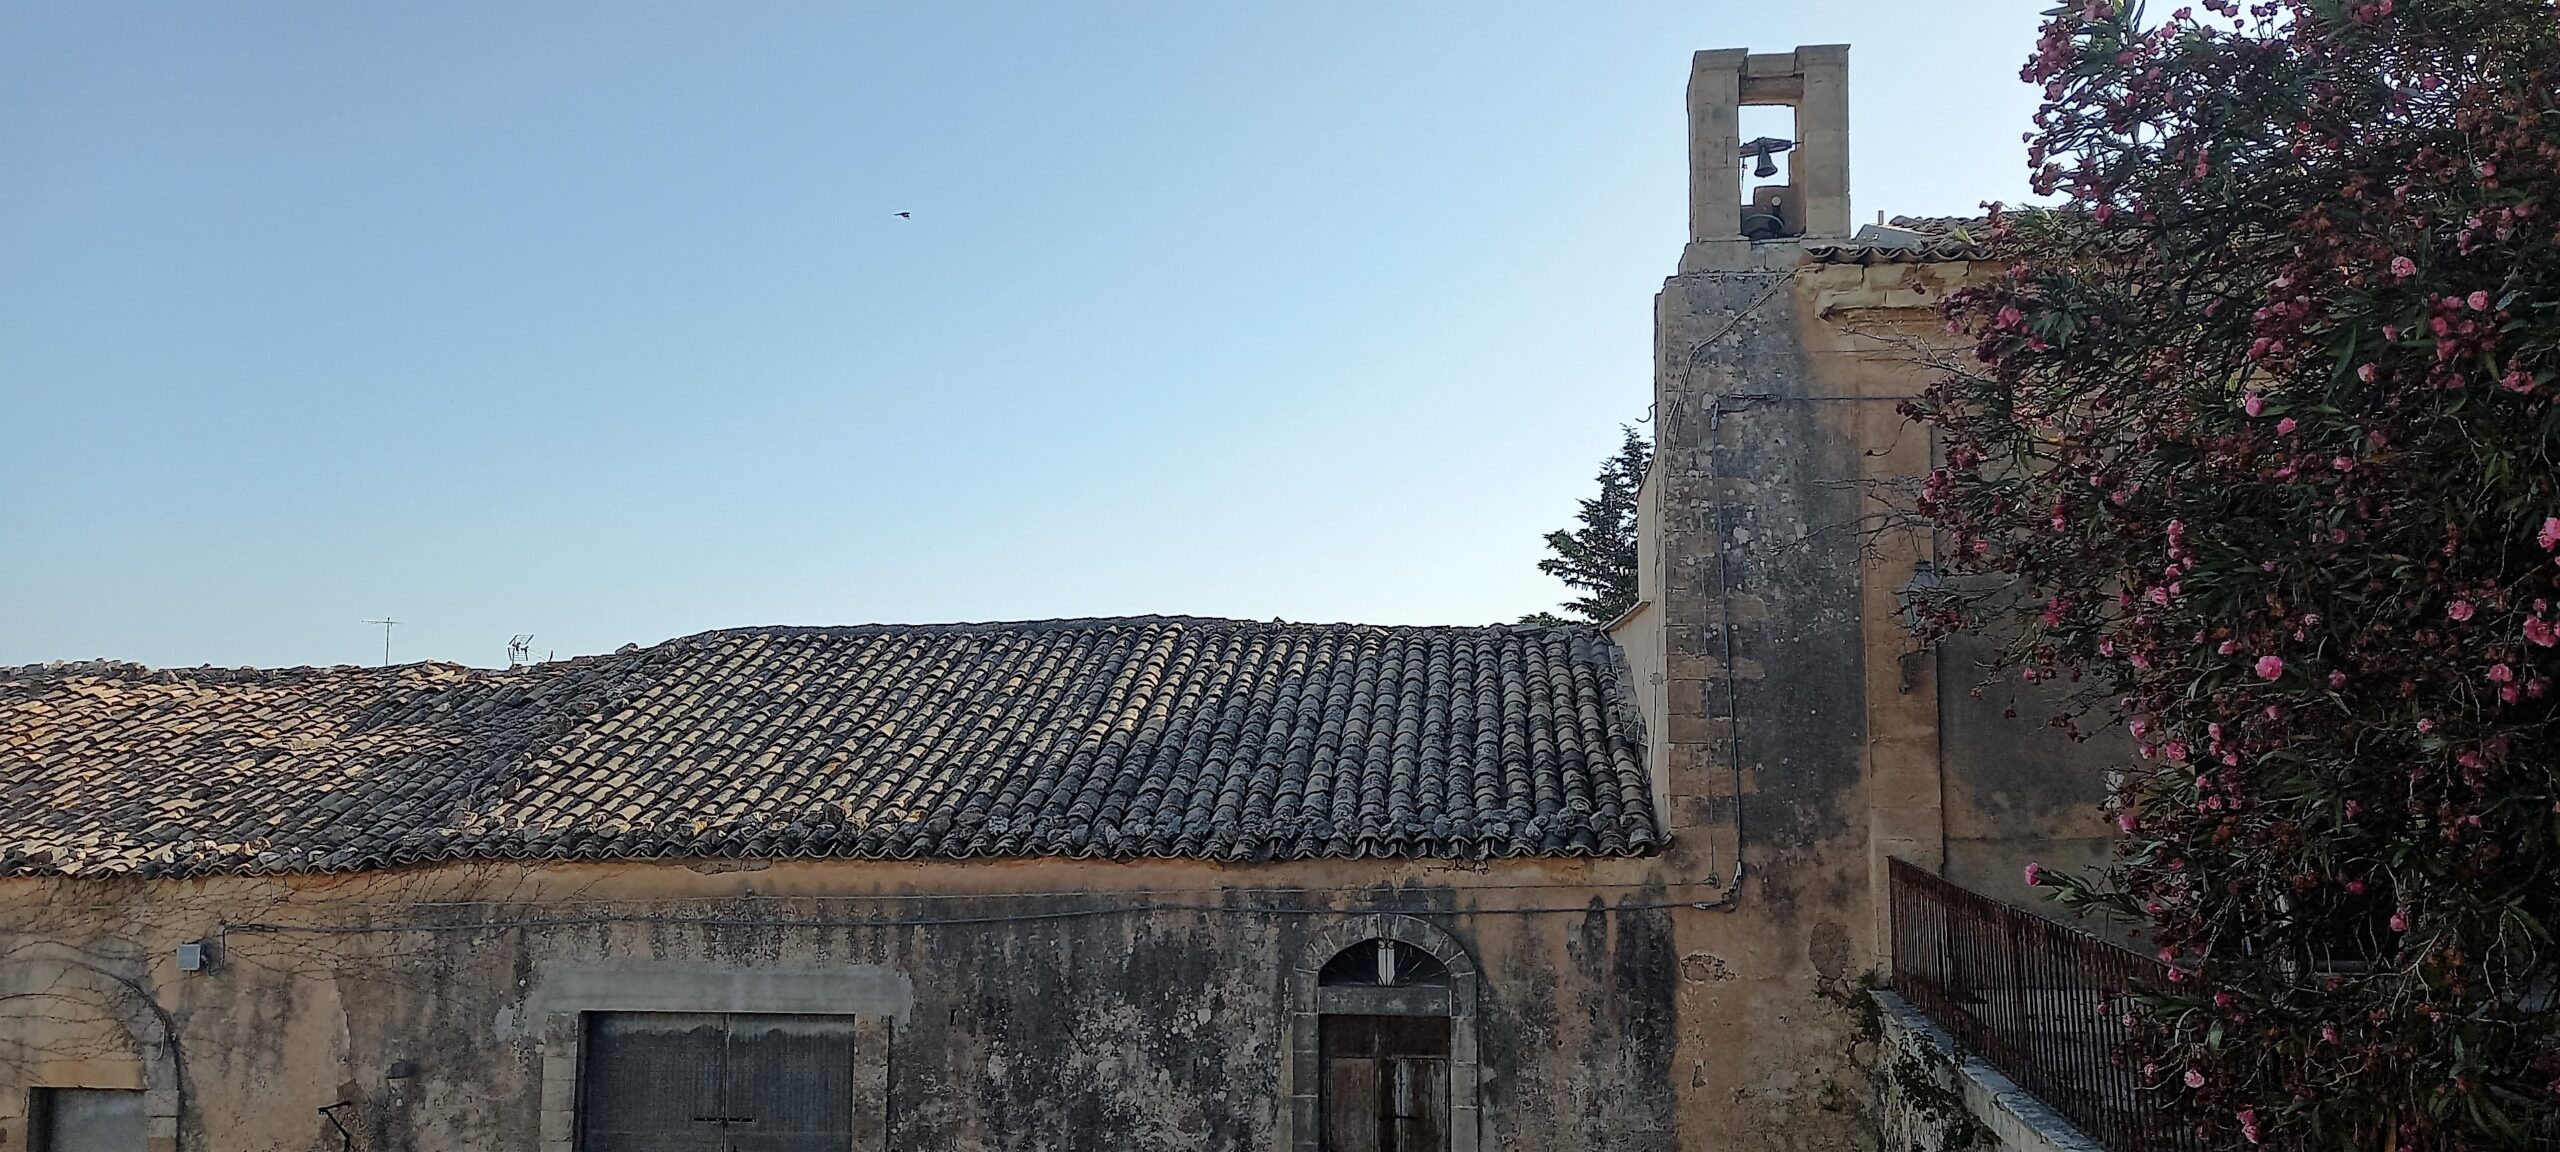 la castellana marina di ragusa visionaria sicily needs love tetti di tegole